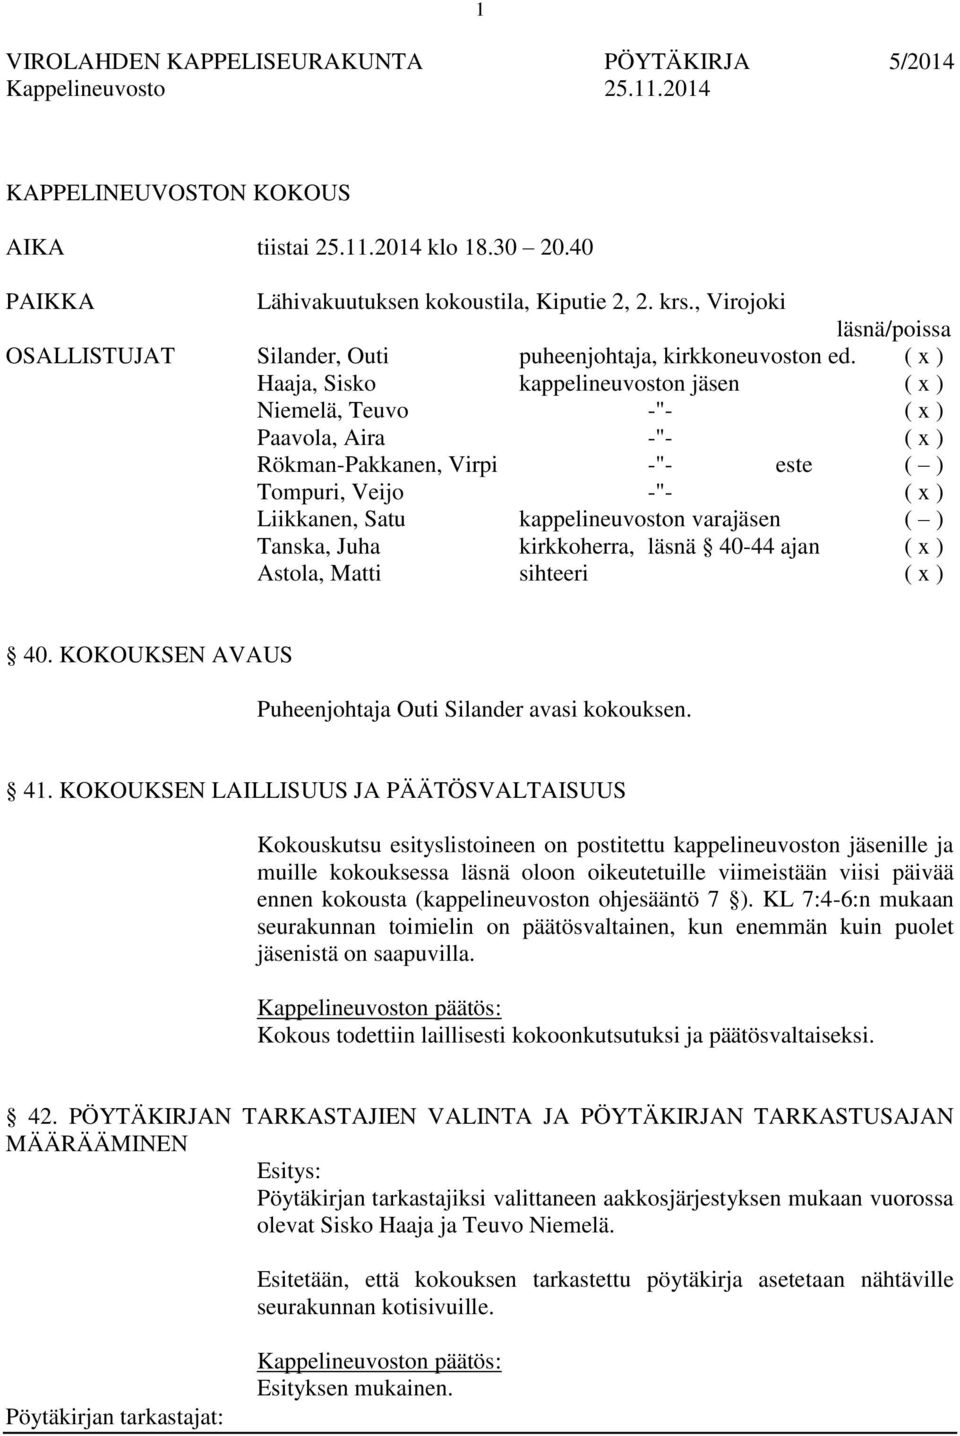 ( x ) Haaja, Sisko kappelineuvoston jäsen ( x ) Niemelä, Teuvo -"- ( x ) Paavola, Aira -"- ( x ) Rökman-Pakkanen, Virpi -"- este ( ) Tompuri, Veijo -"- ( x ) Liikkanen, Satu kappelineuvoston